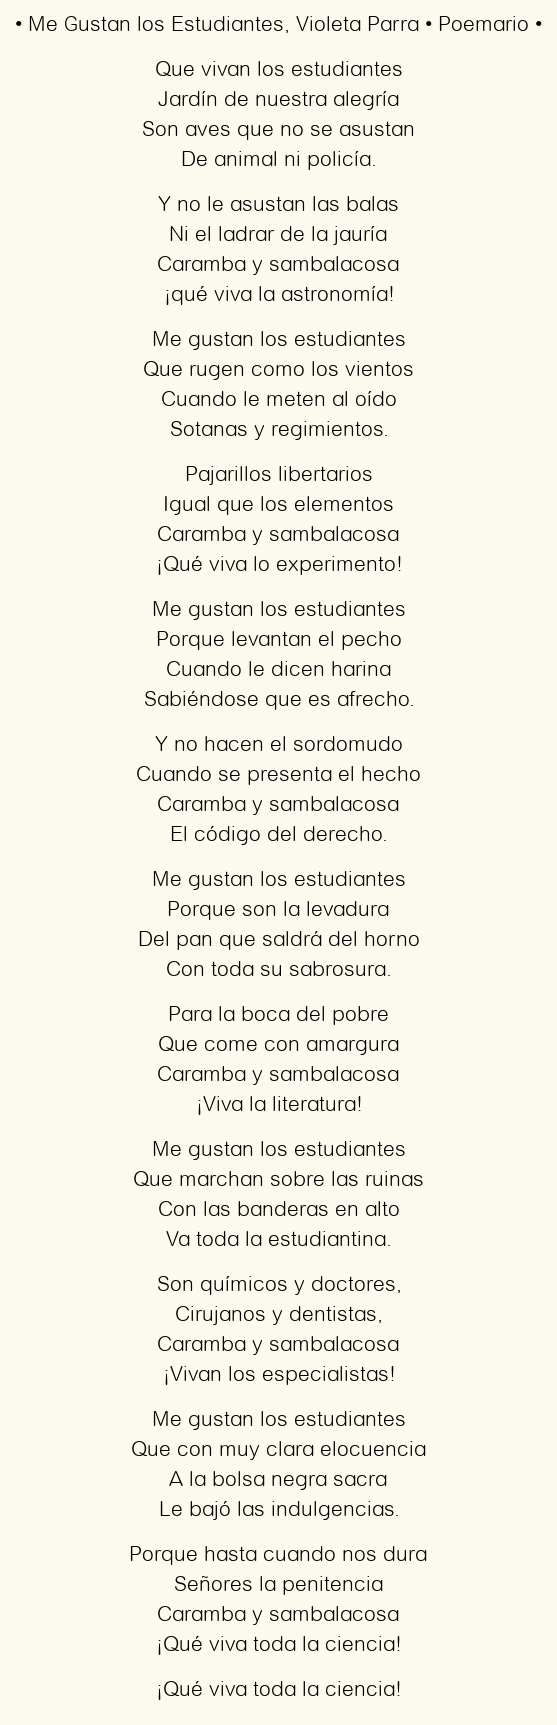 Imagen con el poema Me Gustan los Estudiantes, por Violeta Parra